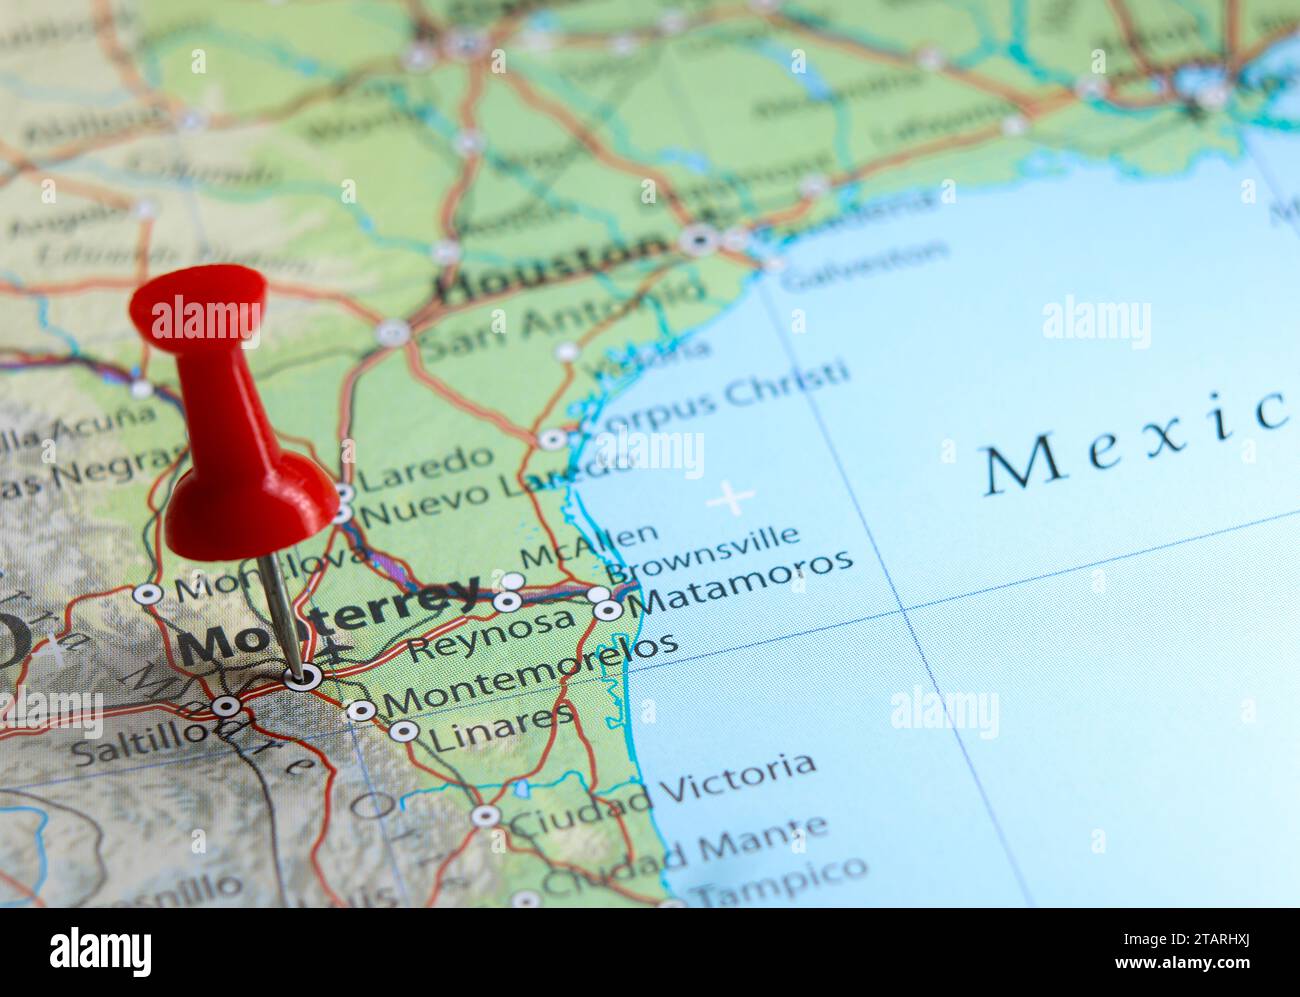 Monterrey, Mexico pin on map Stock Photo